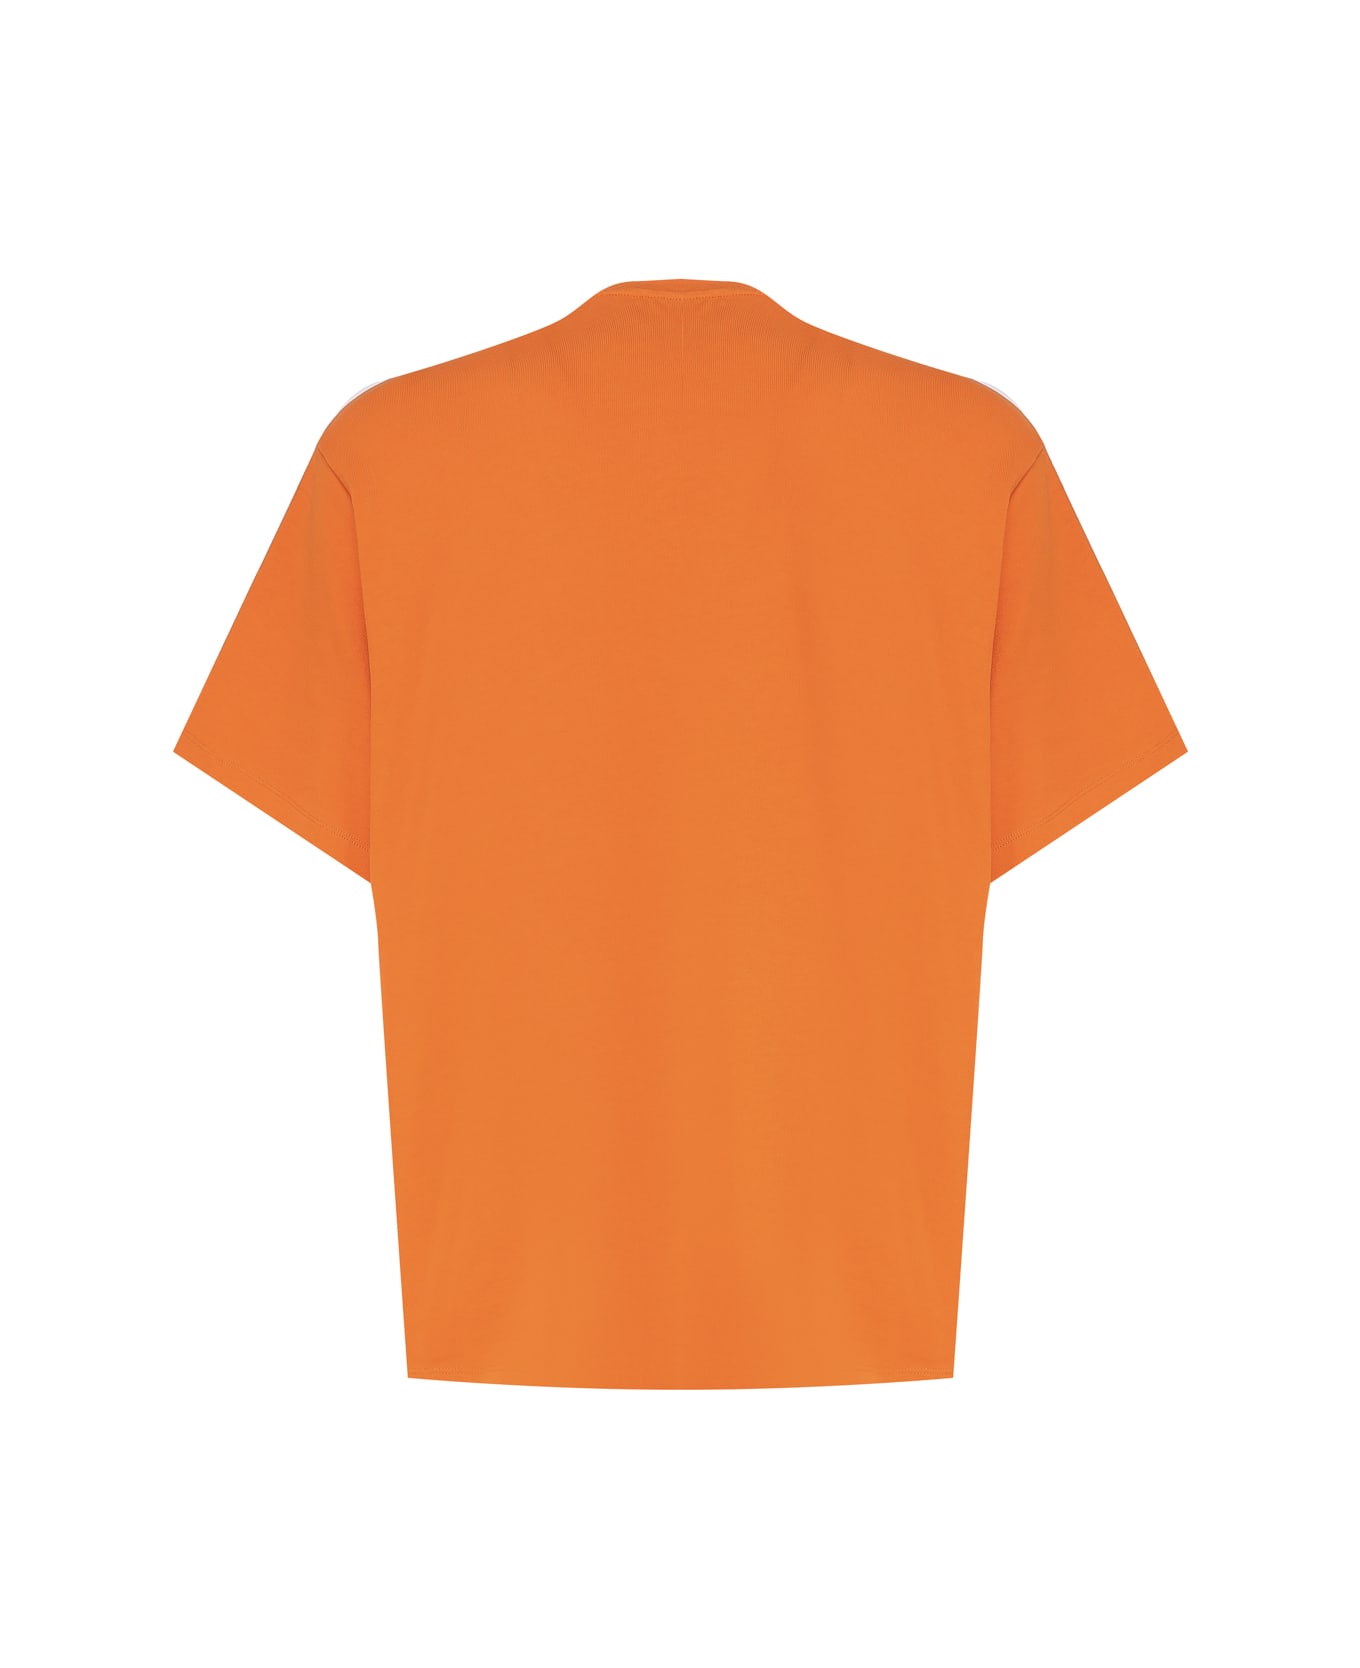 Moncler Genius T-shirt With Logo Pattern - Orange